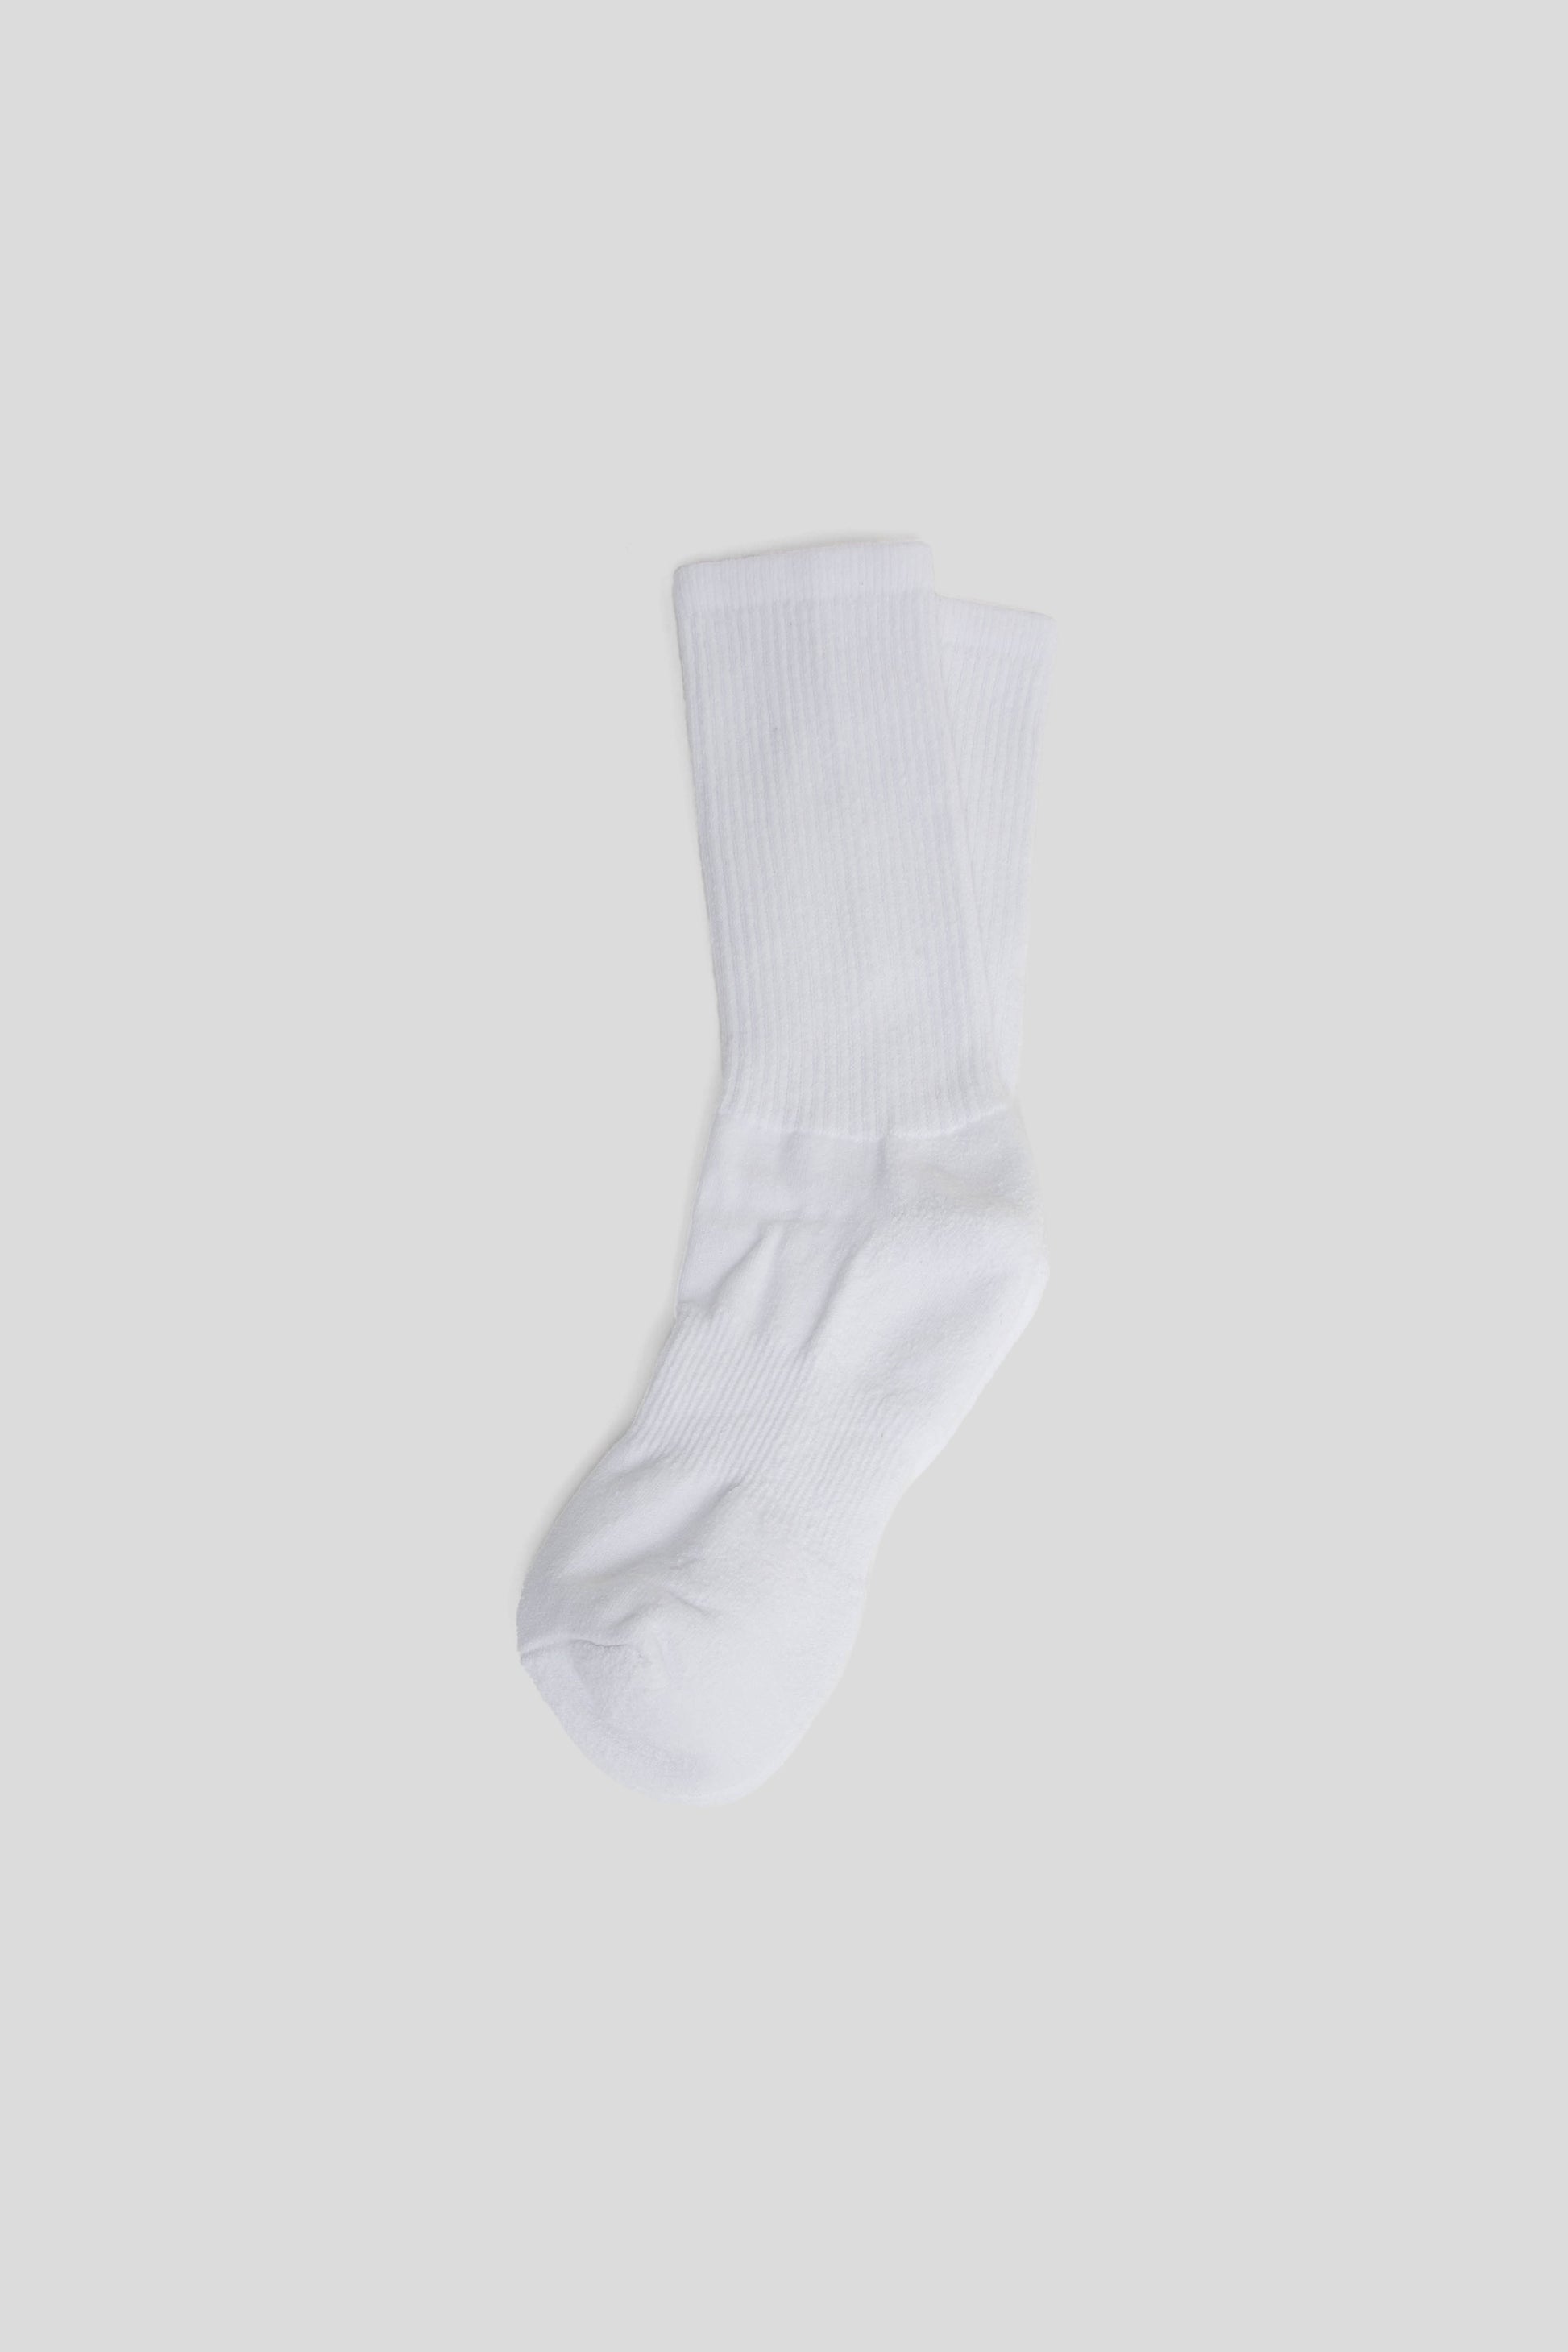 American Trench Mil-Spec Sport Socks in White